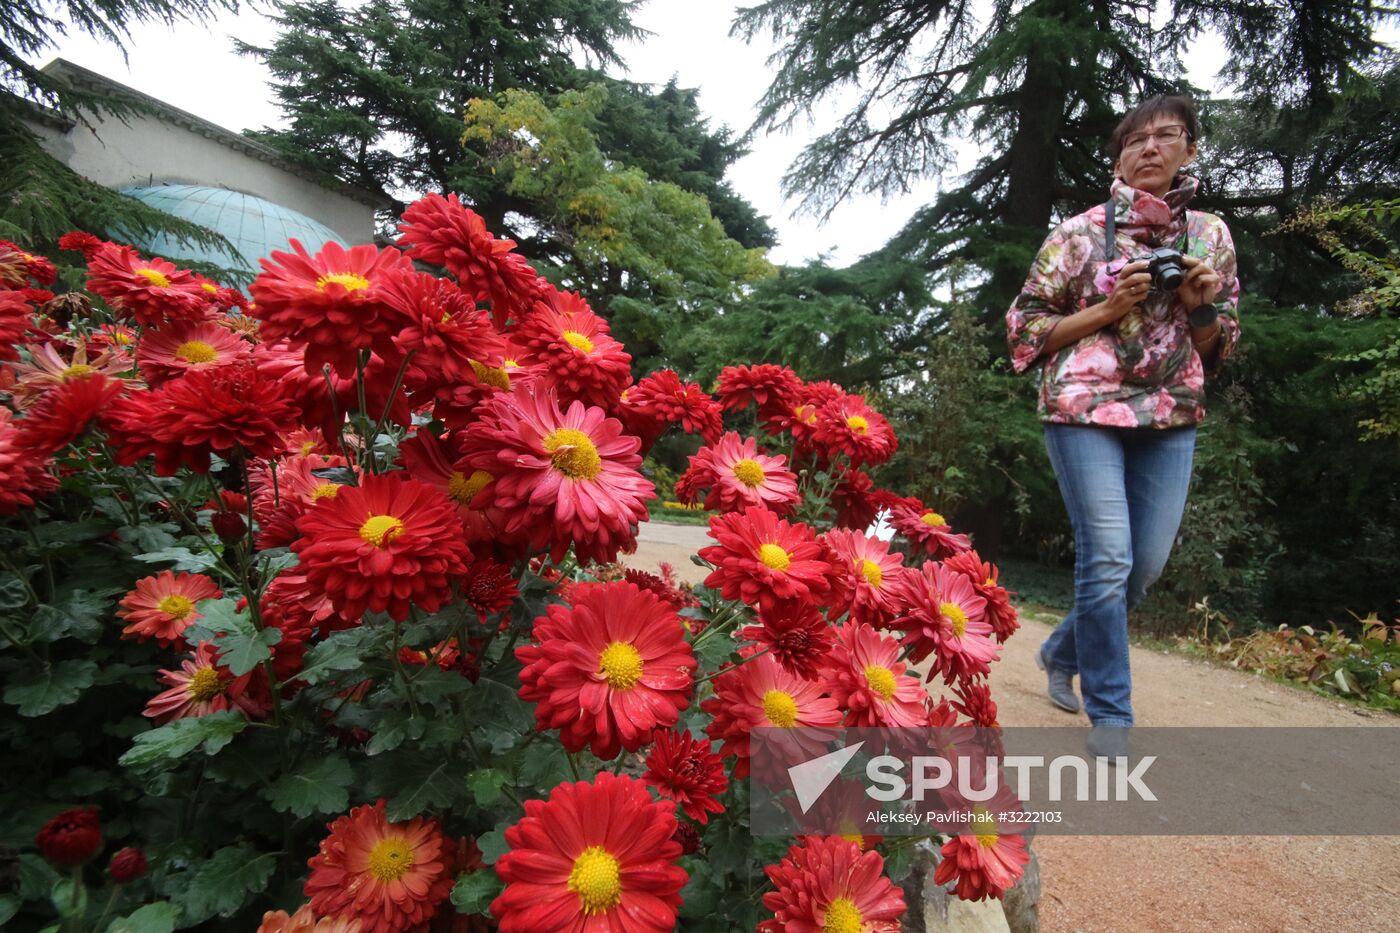 Ball of Chrysanthemums in Nikitsky Botanical Garden